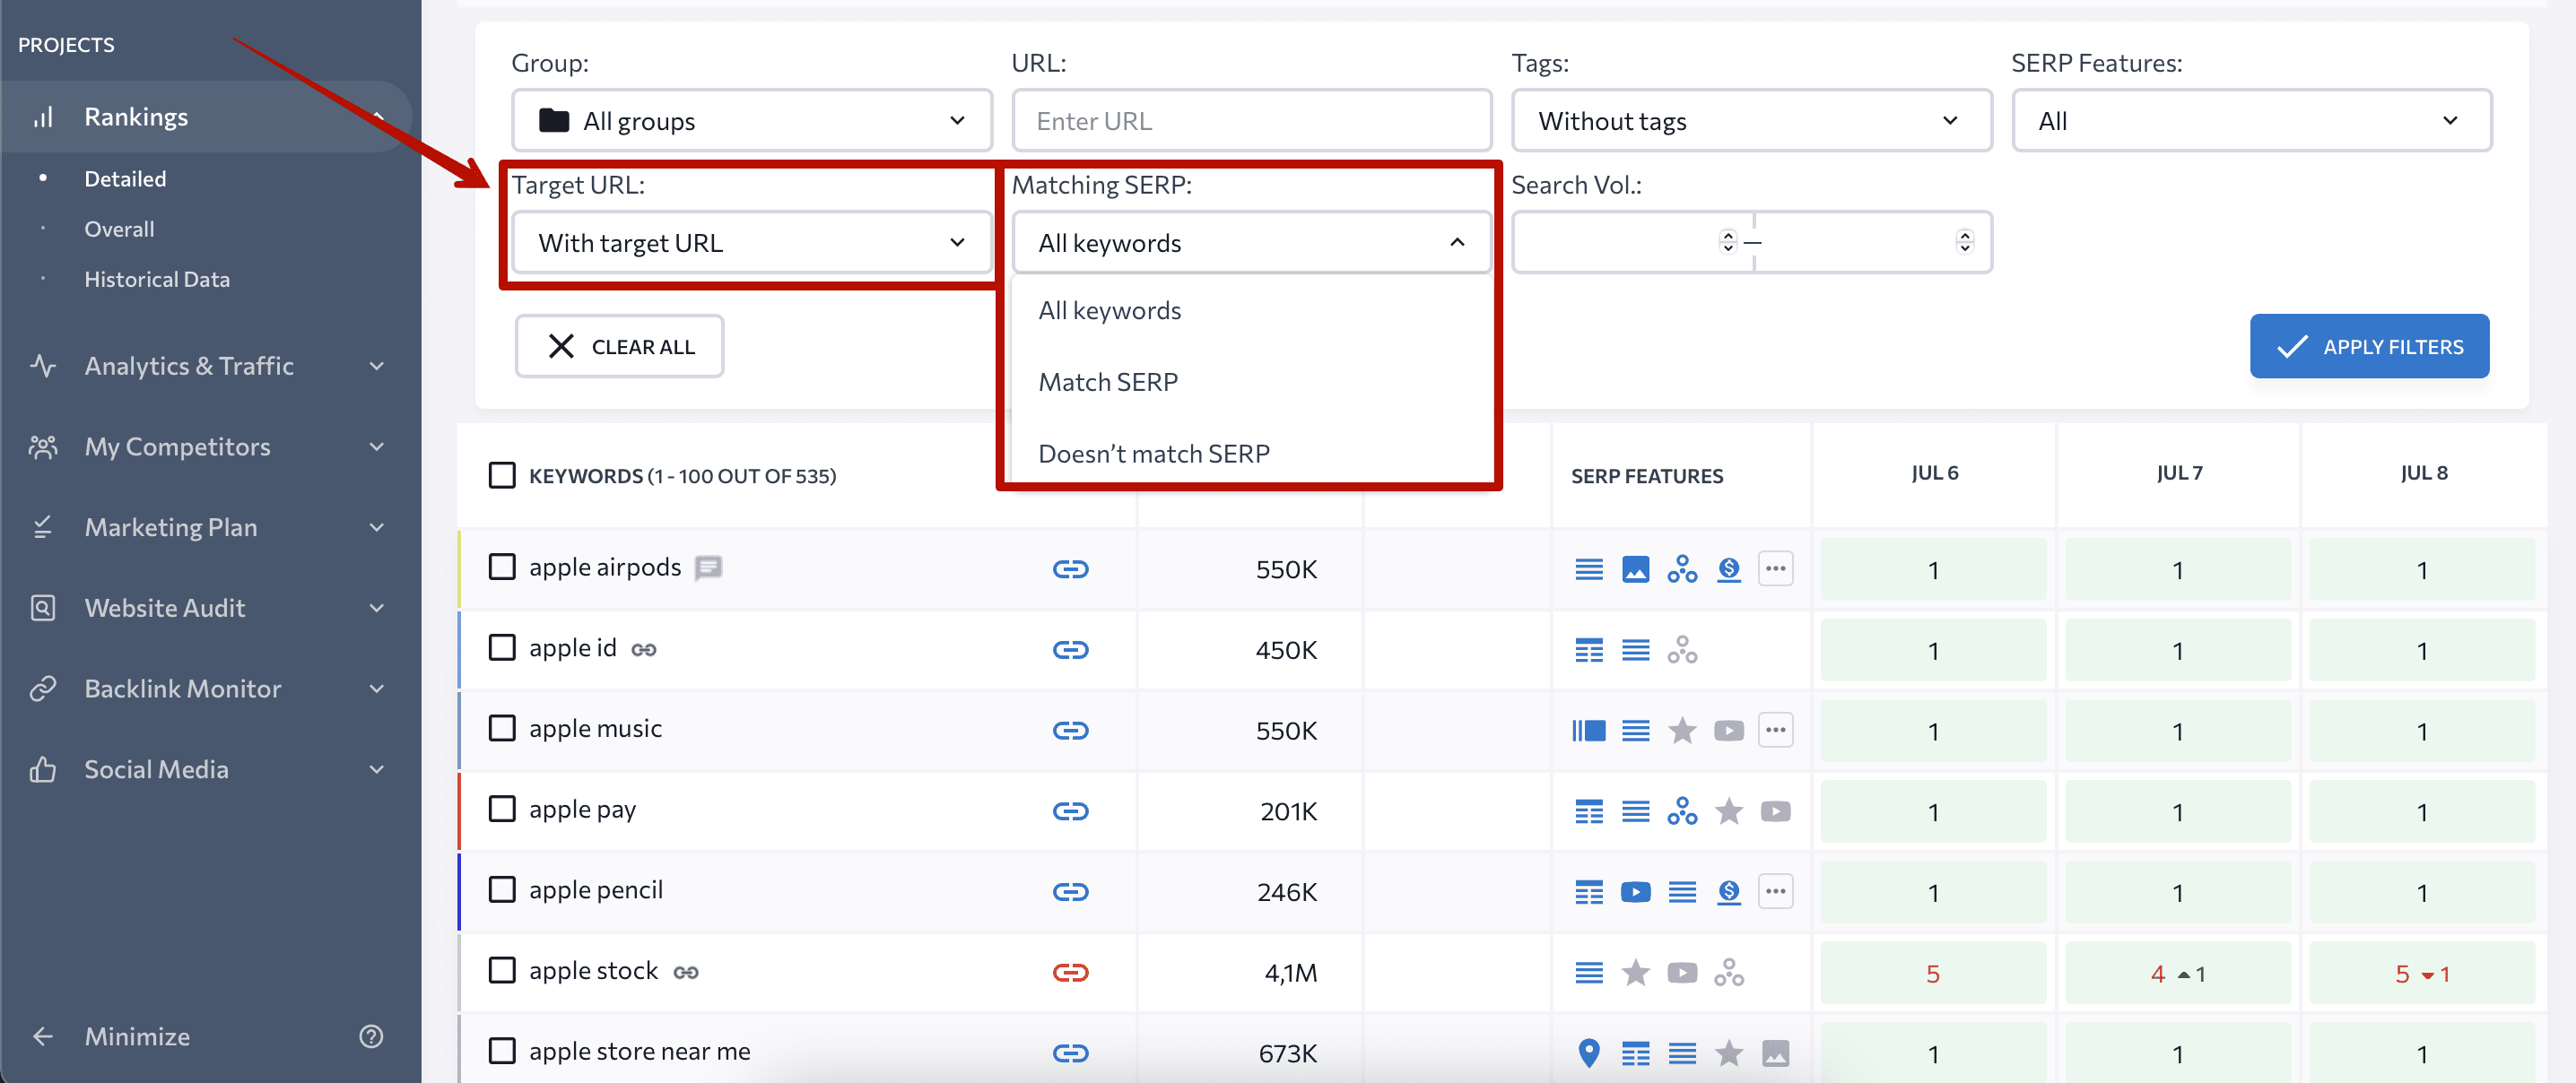 Target URL filtering in Rankings